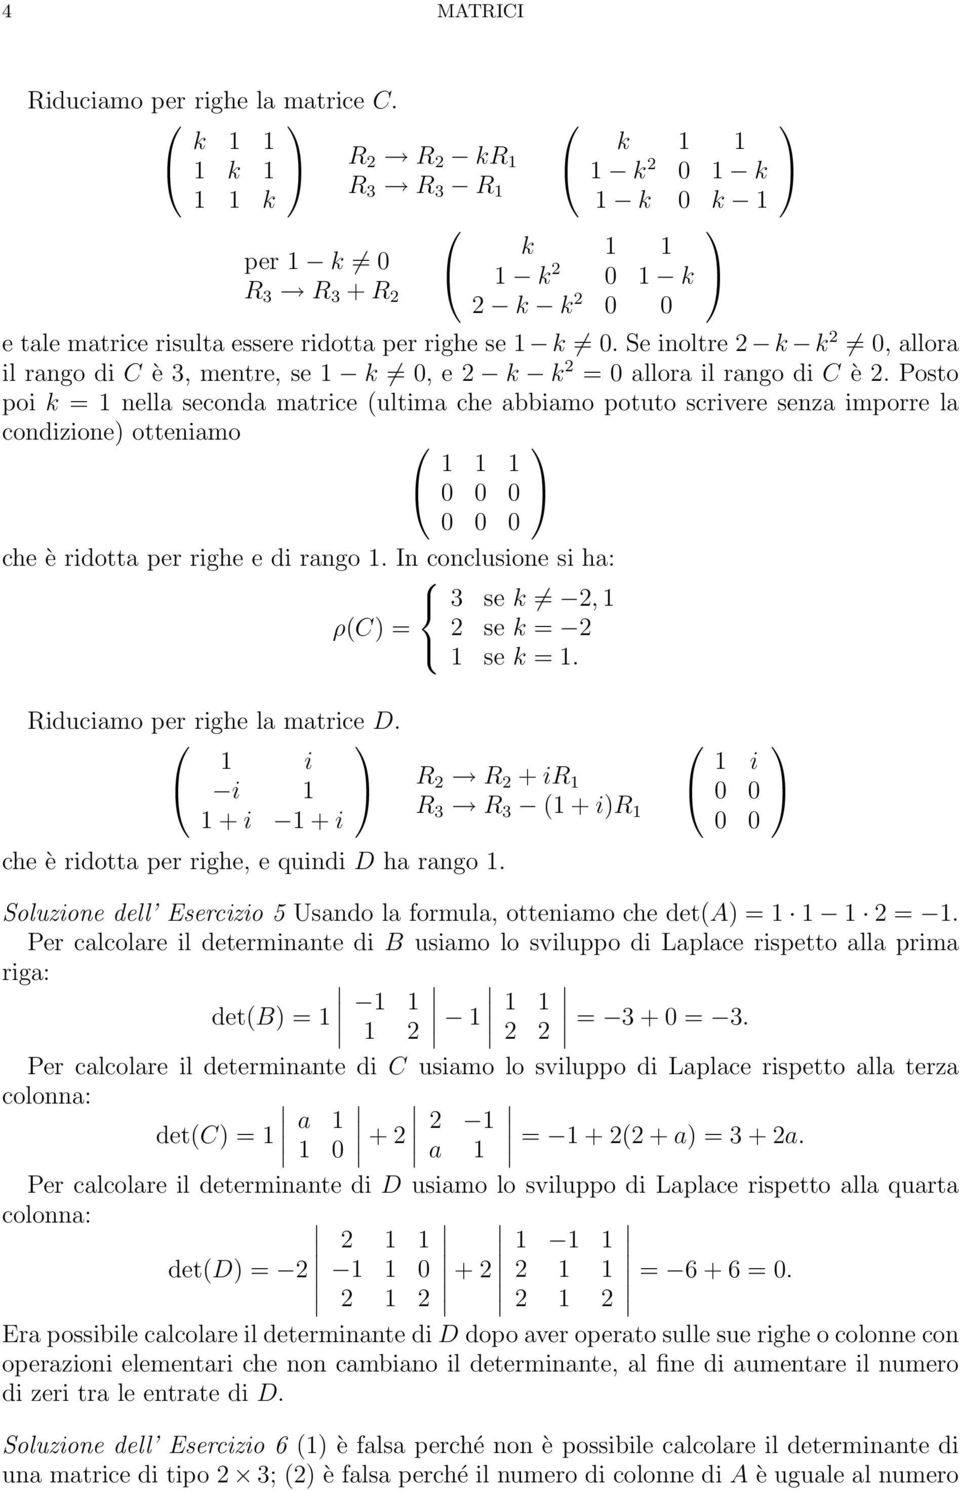 righe e di rango In conclusione si ha: 3 se k 2, ρ(c = 2 se k = 2 se k = iduciamo per righe la matrice D i i 2 2 + i + i + i 3 3 ( + i che è ridotta per righe, e quindi D ha rango i Soluzione dell